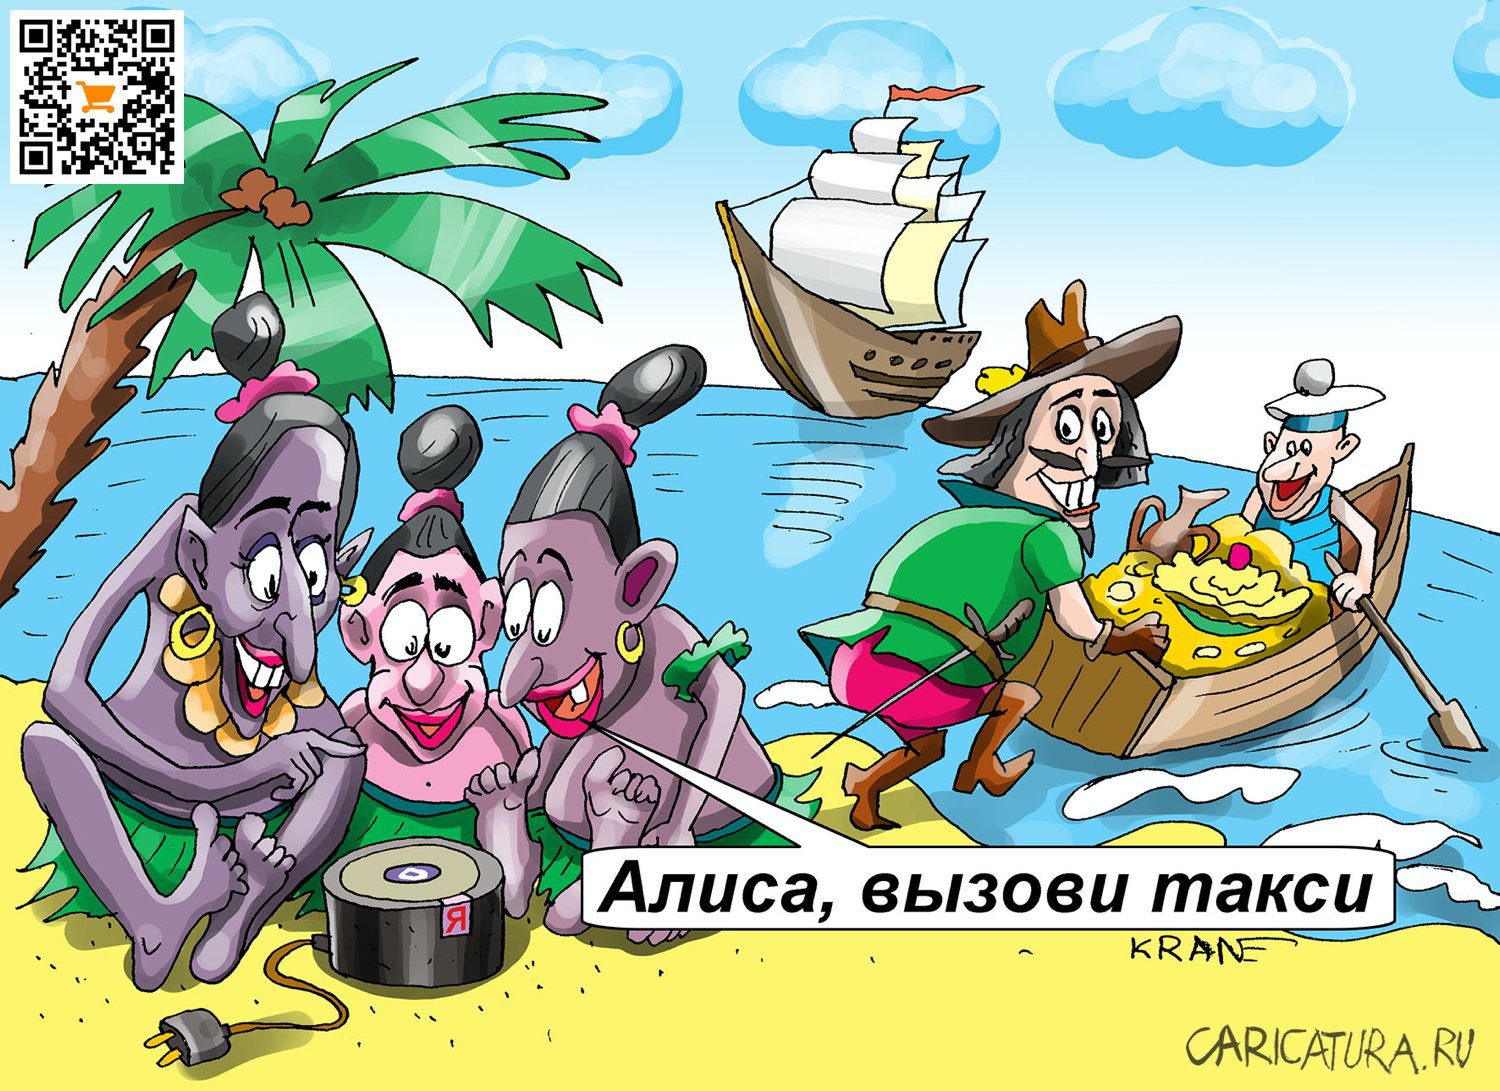 Карикатура "История появления умных колонок", Евгений Кран